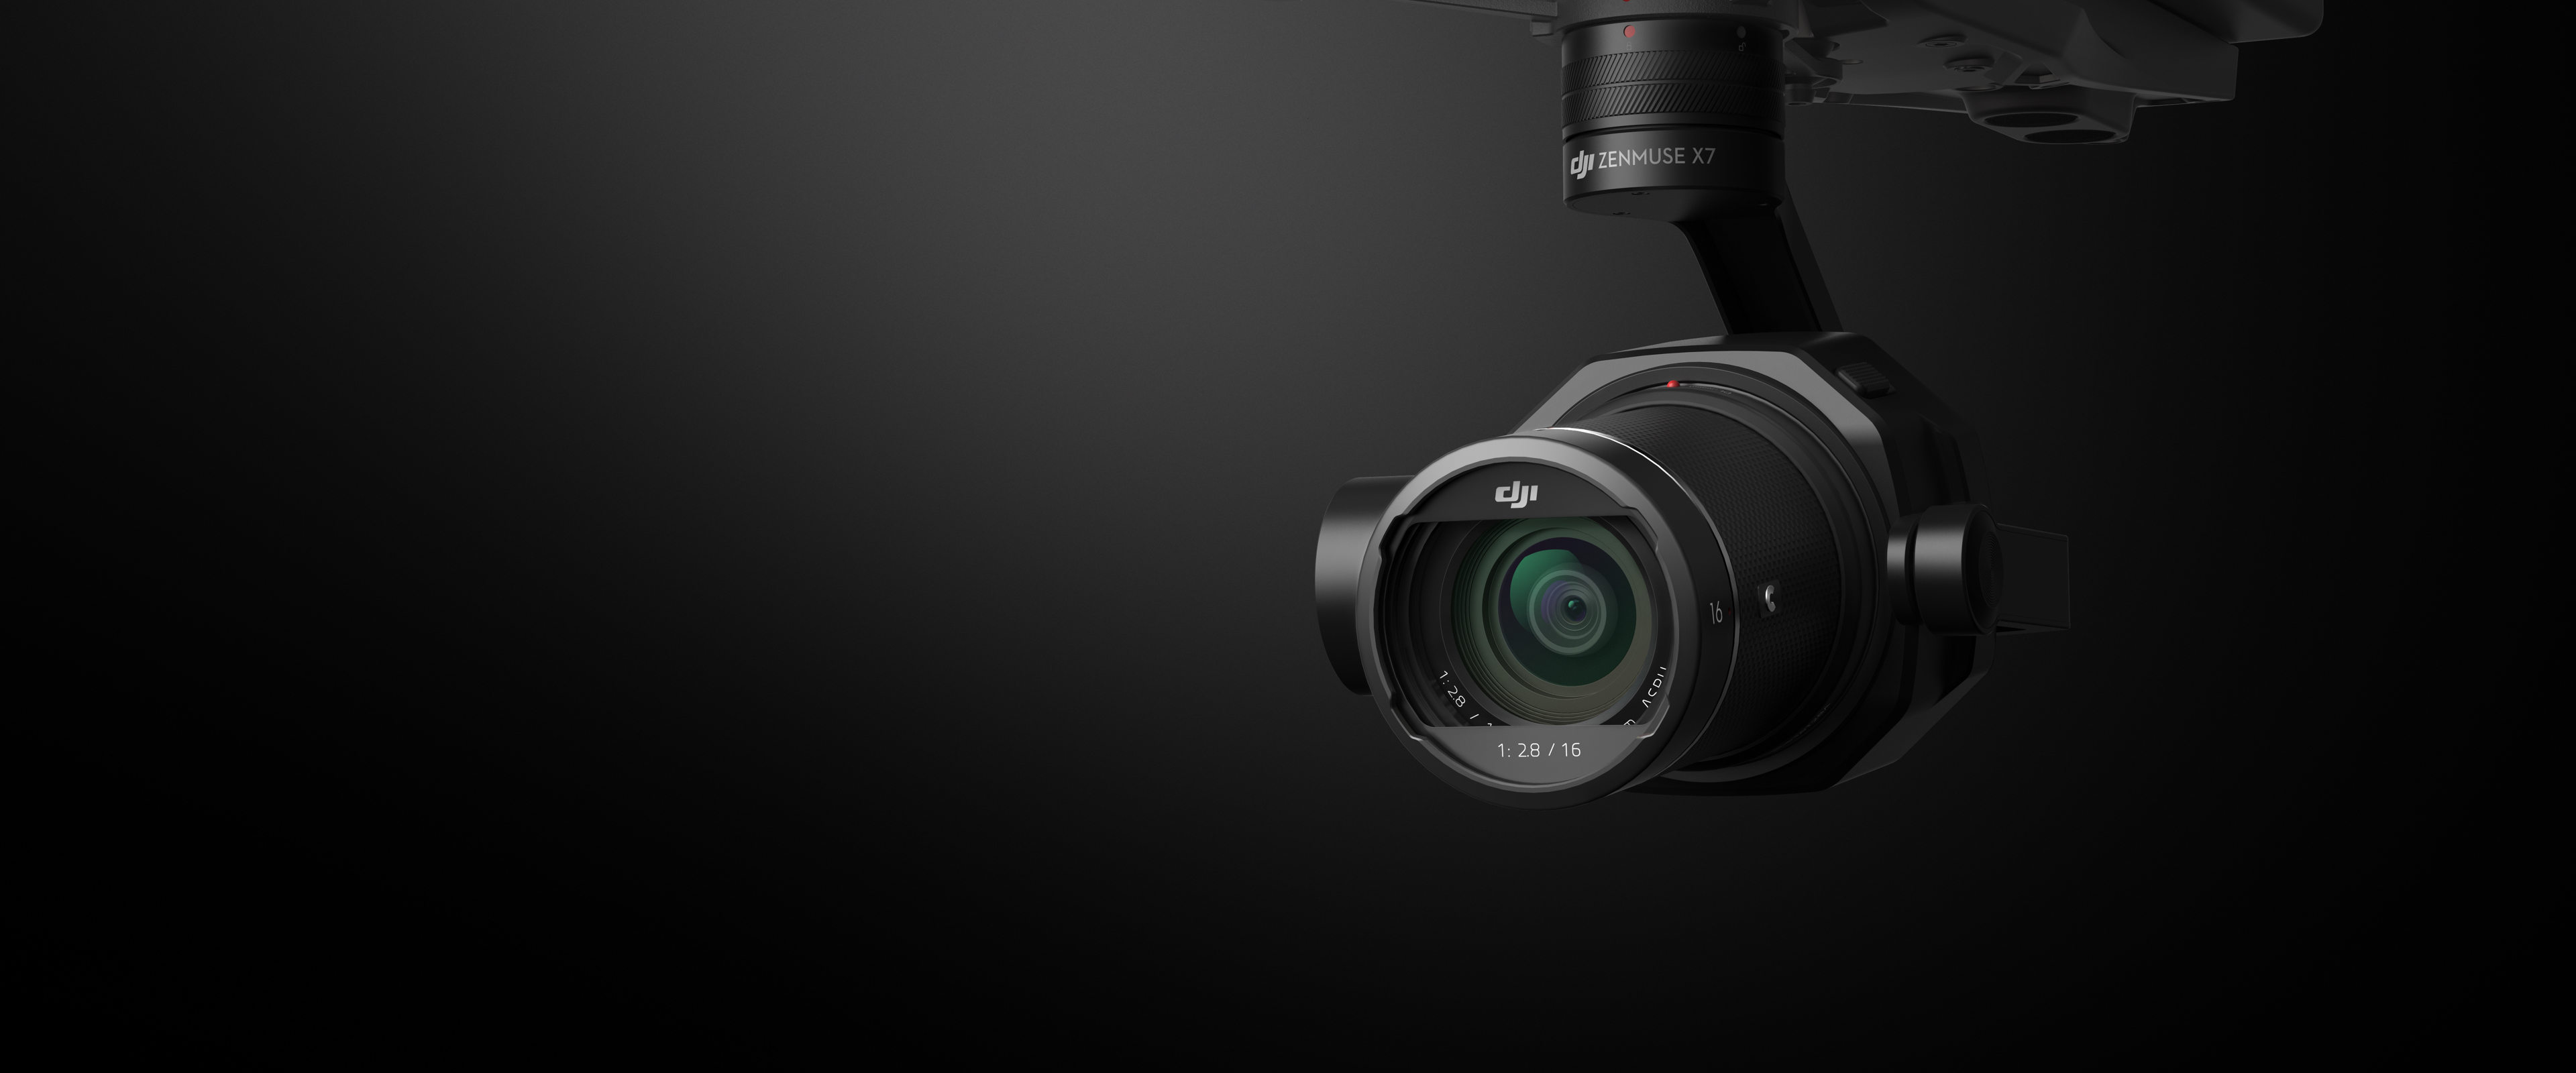 DJI Zenmuse X7: første Super 35mm kamera til droner - Drone Video København | Colorgrading | Drone Copenhagen | AirFlix